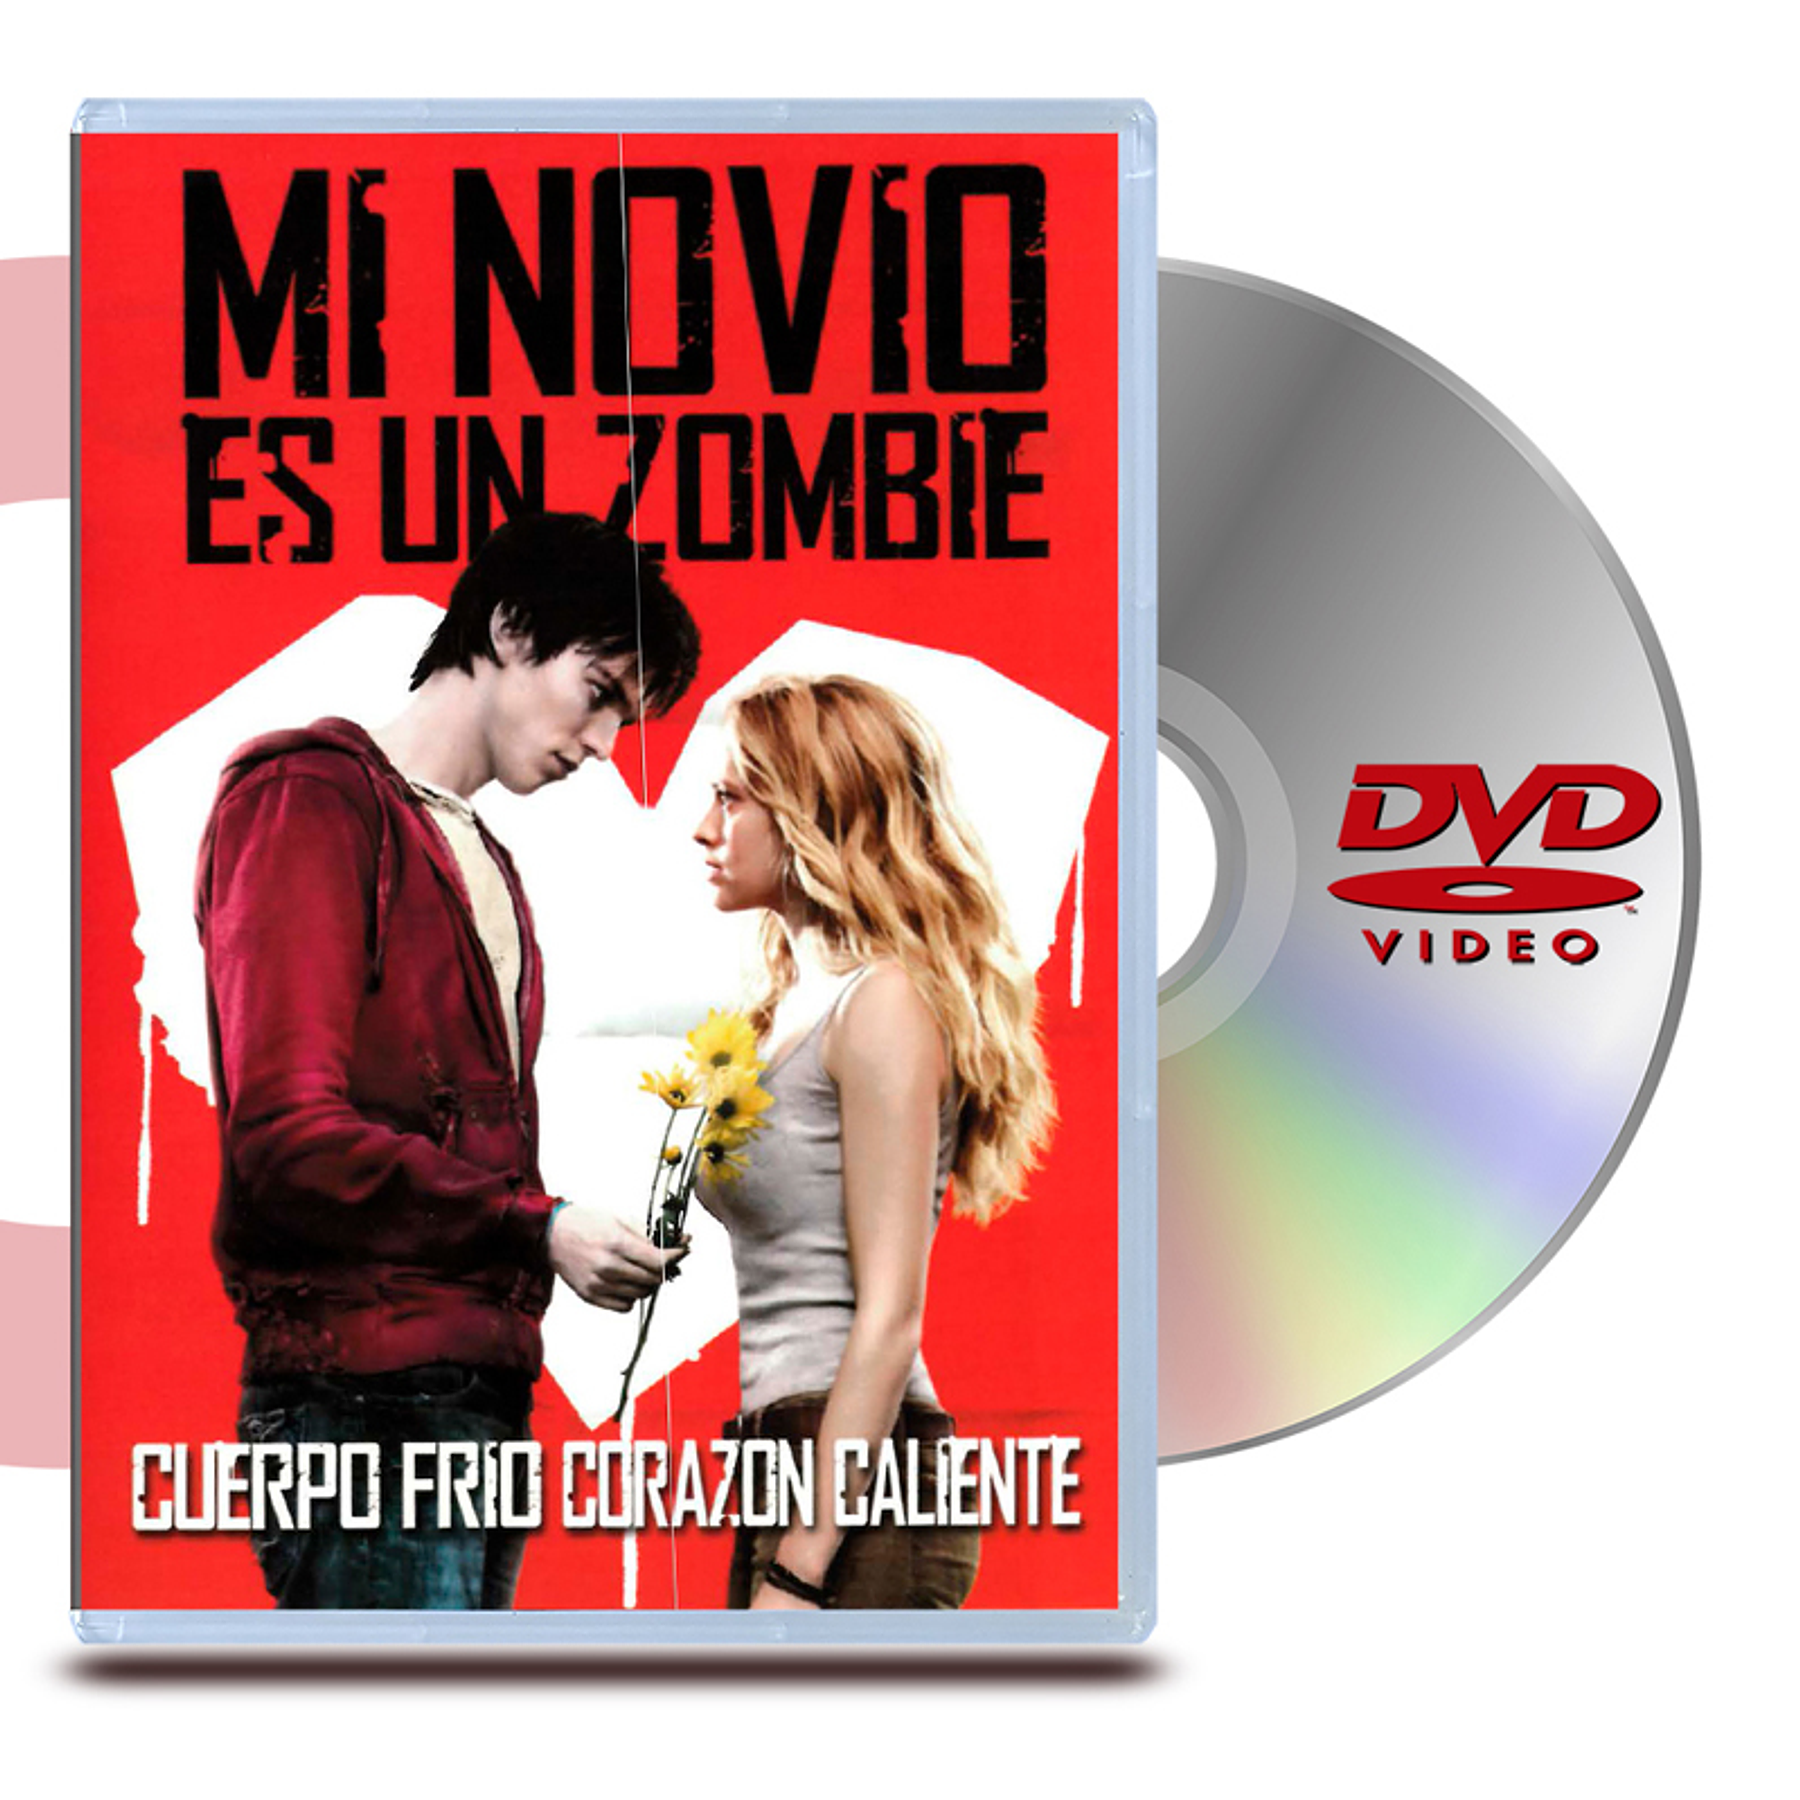 DVD MI NOVIO ES UN ZOMBIE